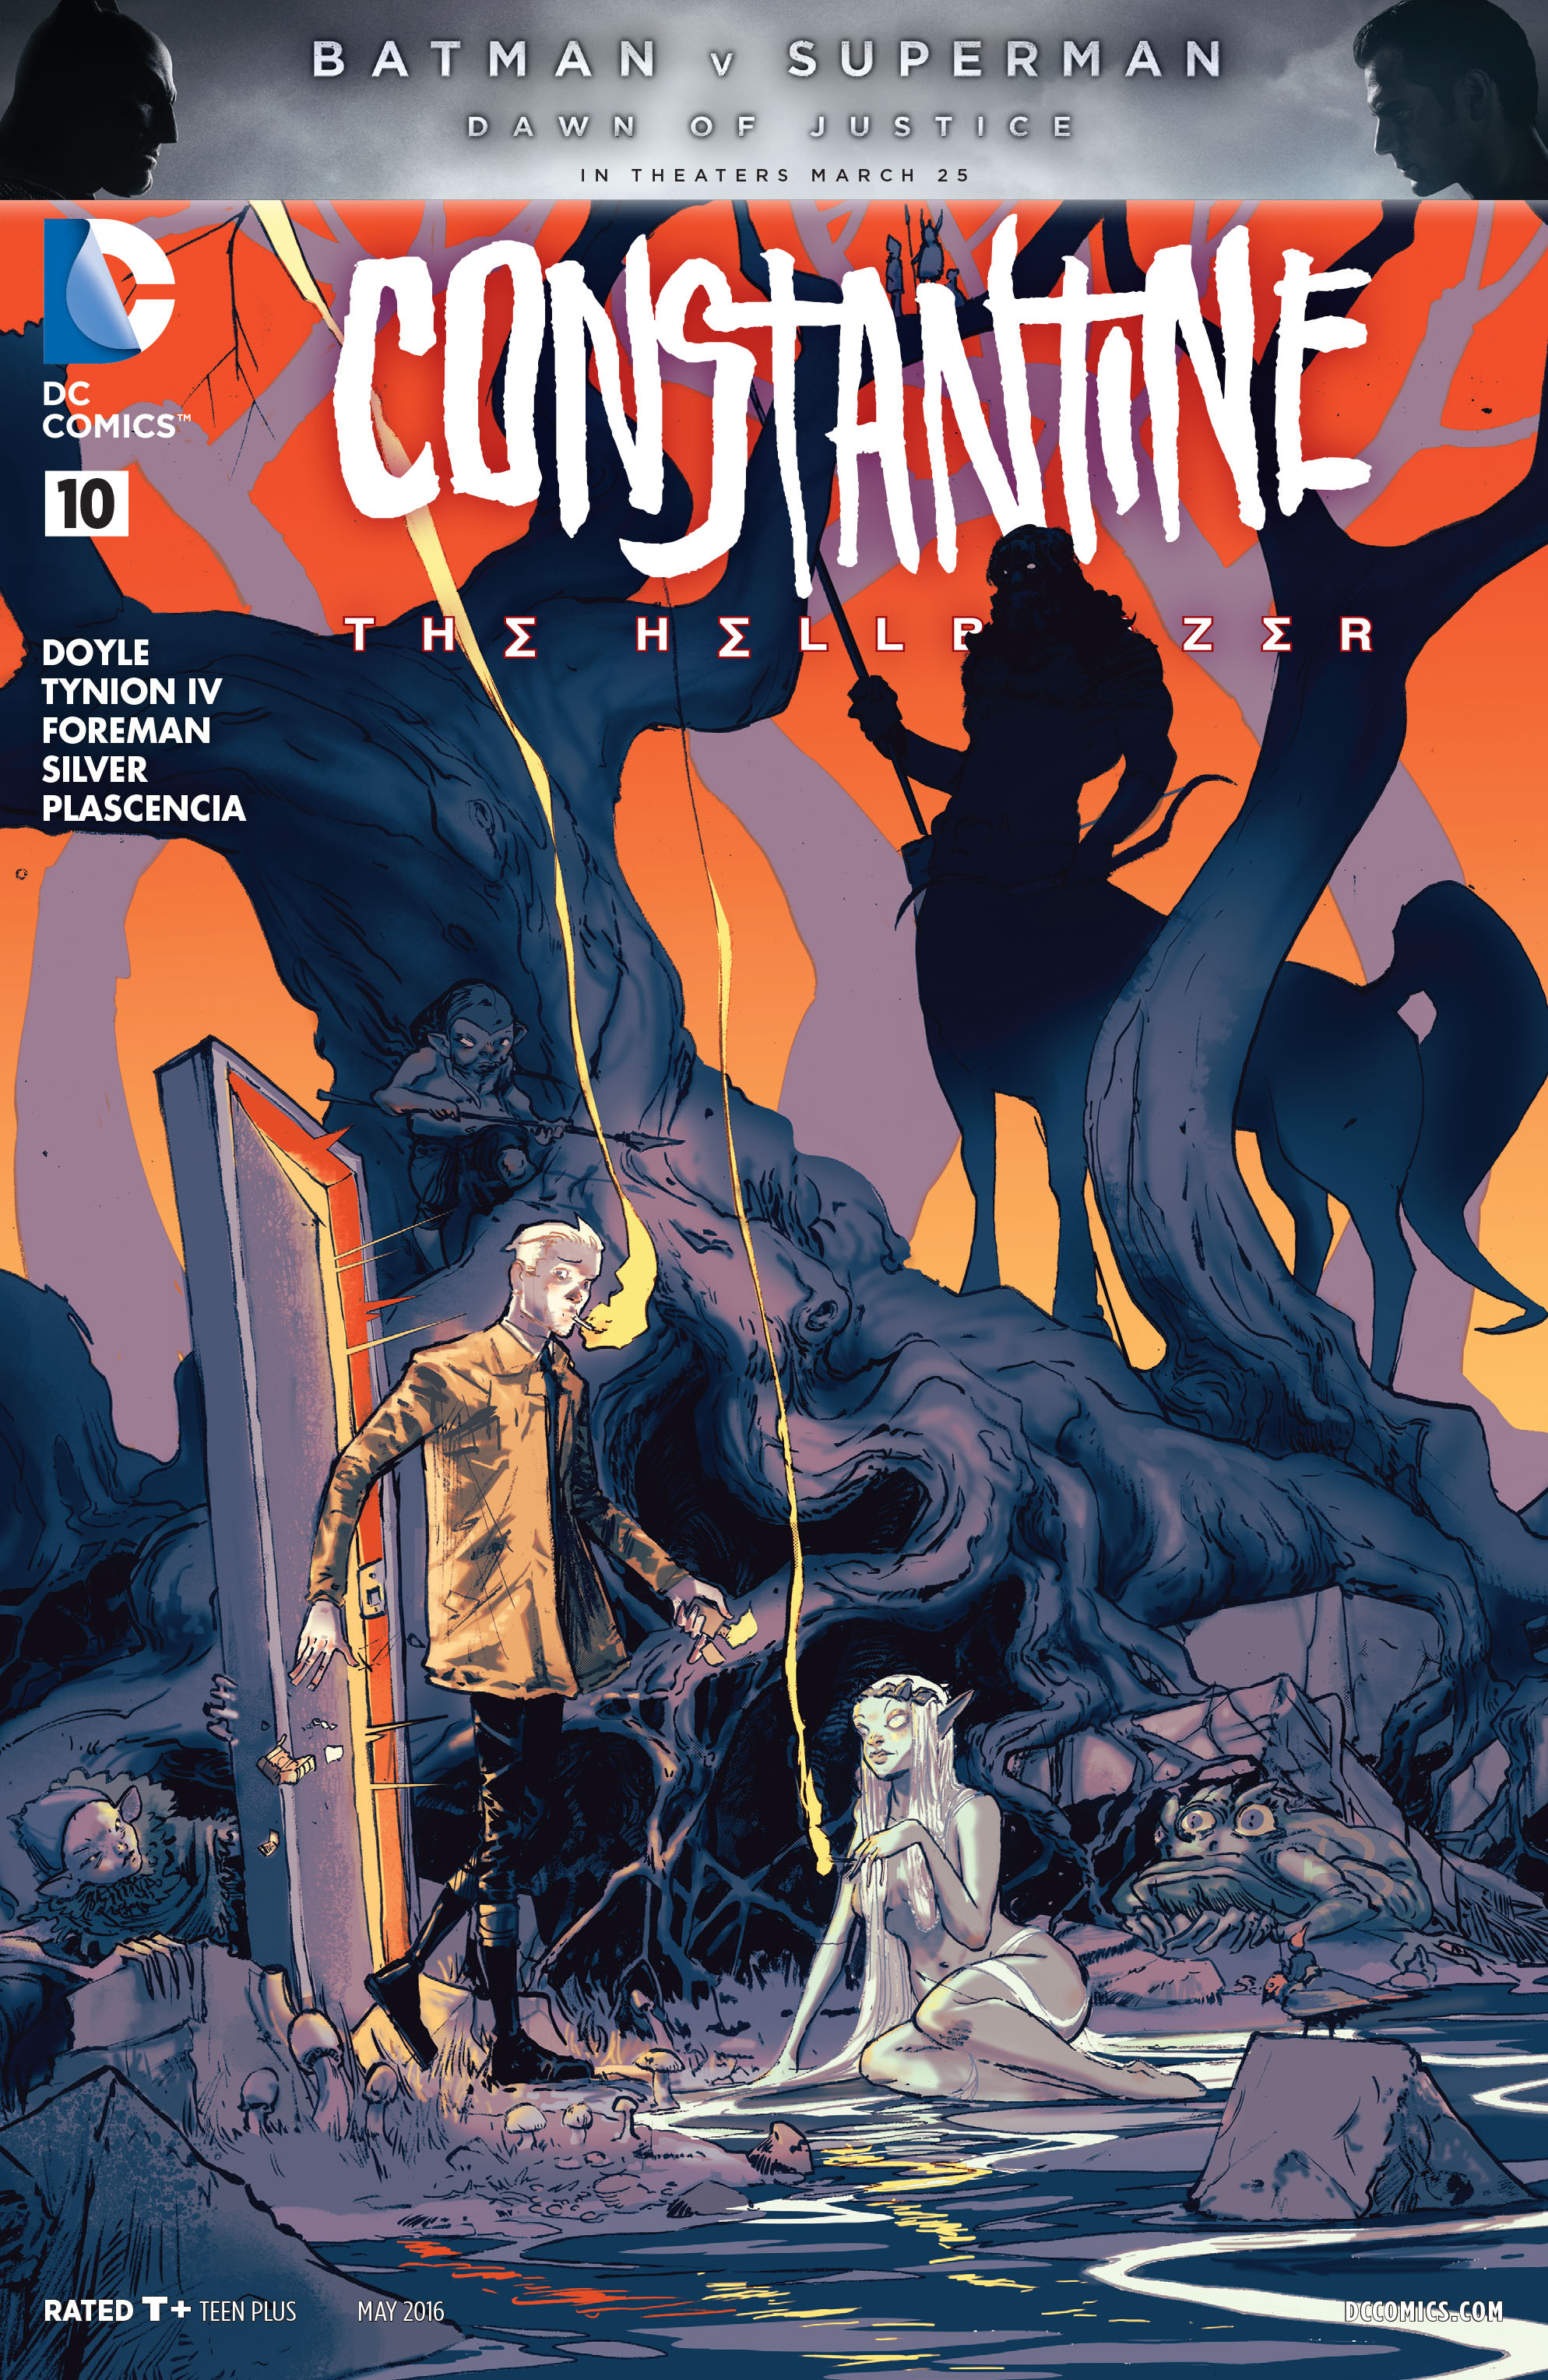 Constantine: The Hellblazer issue 10 | John Constantine Hellblazer Wiki ...